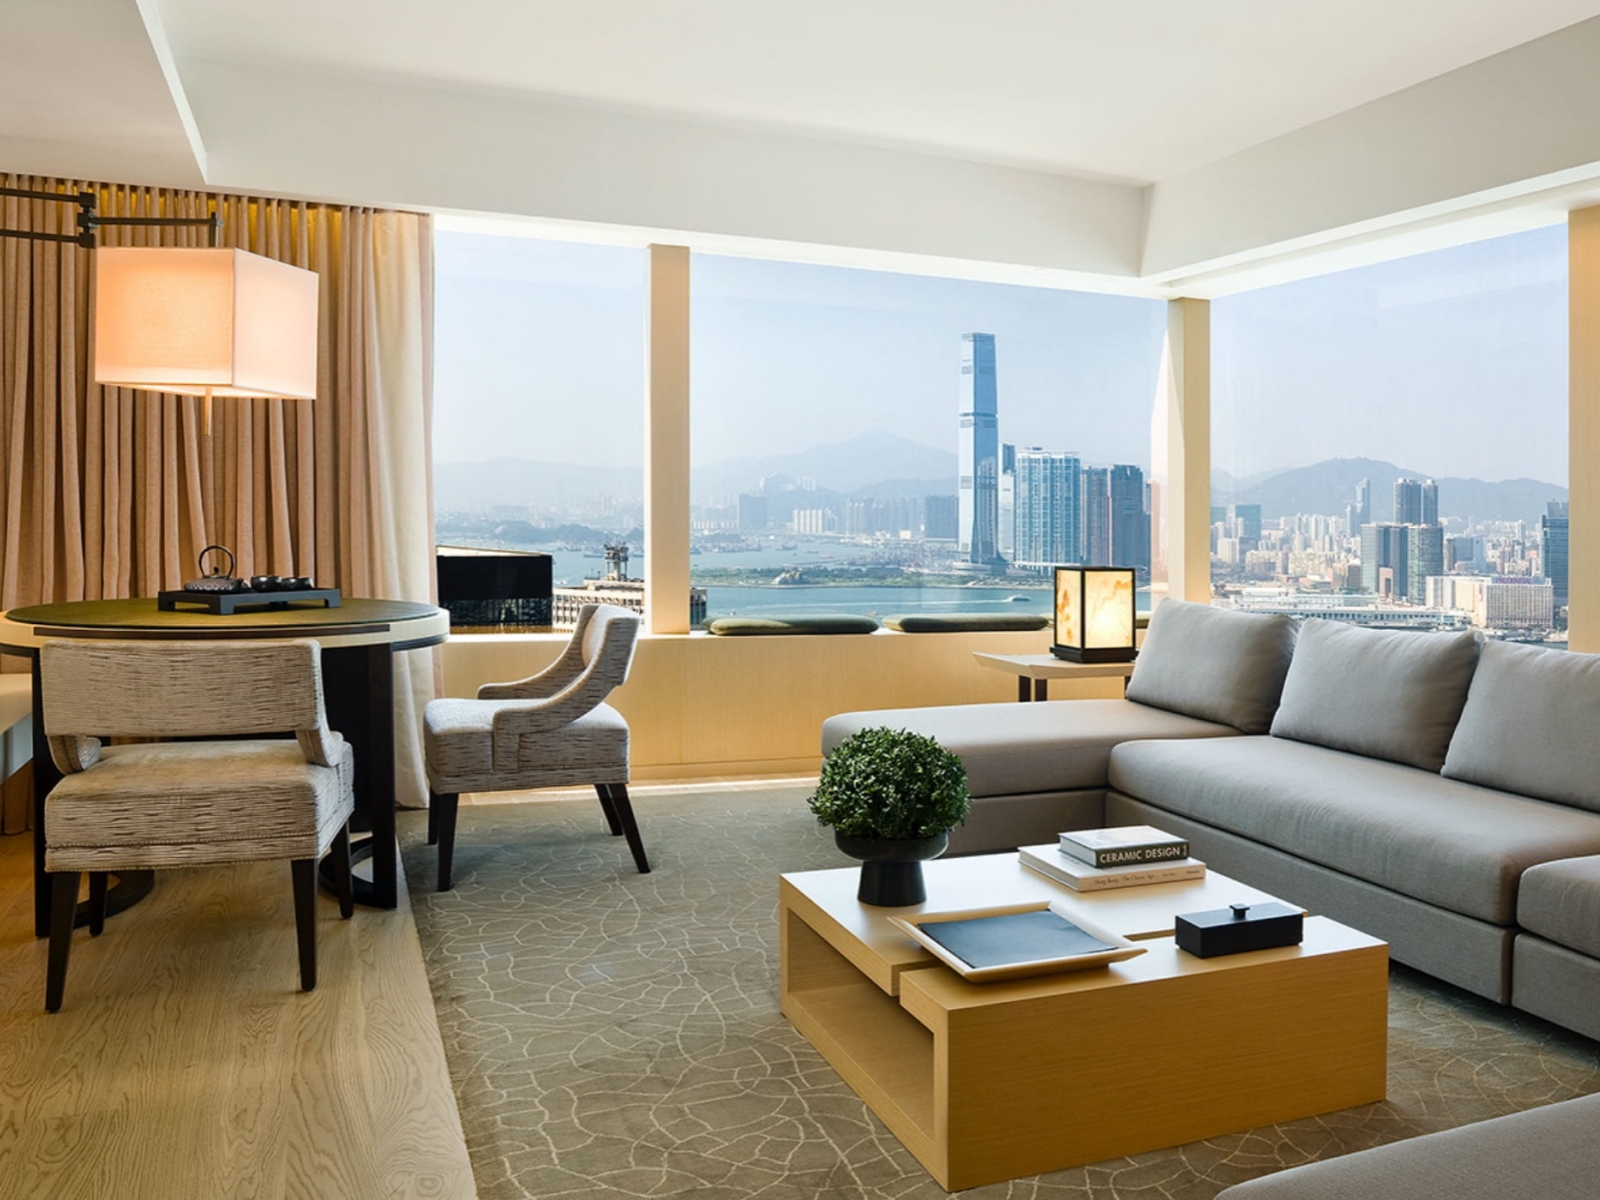 Hong Kong hotels